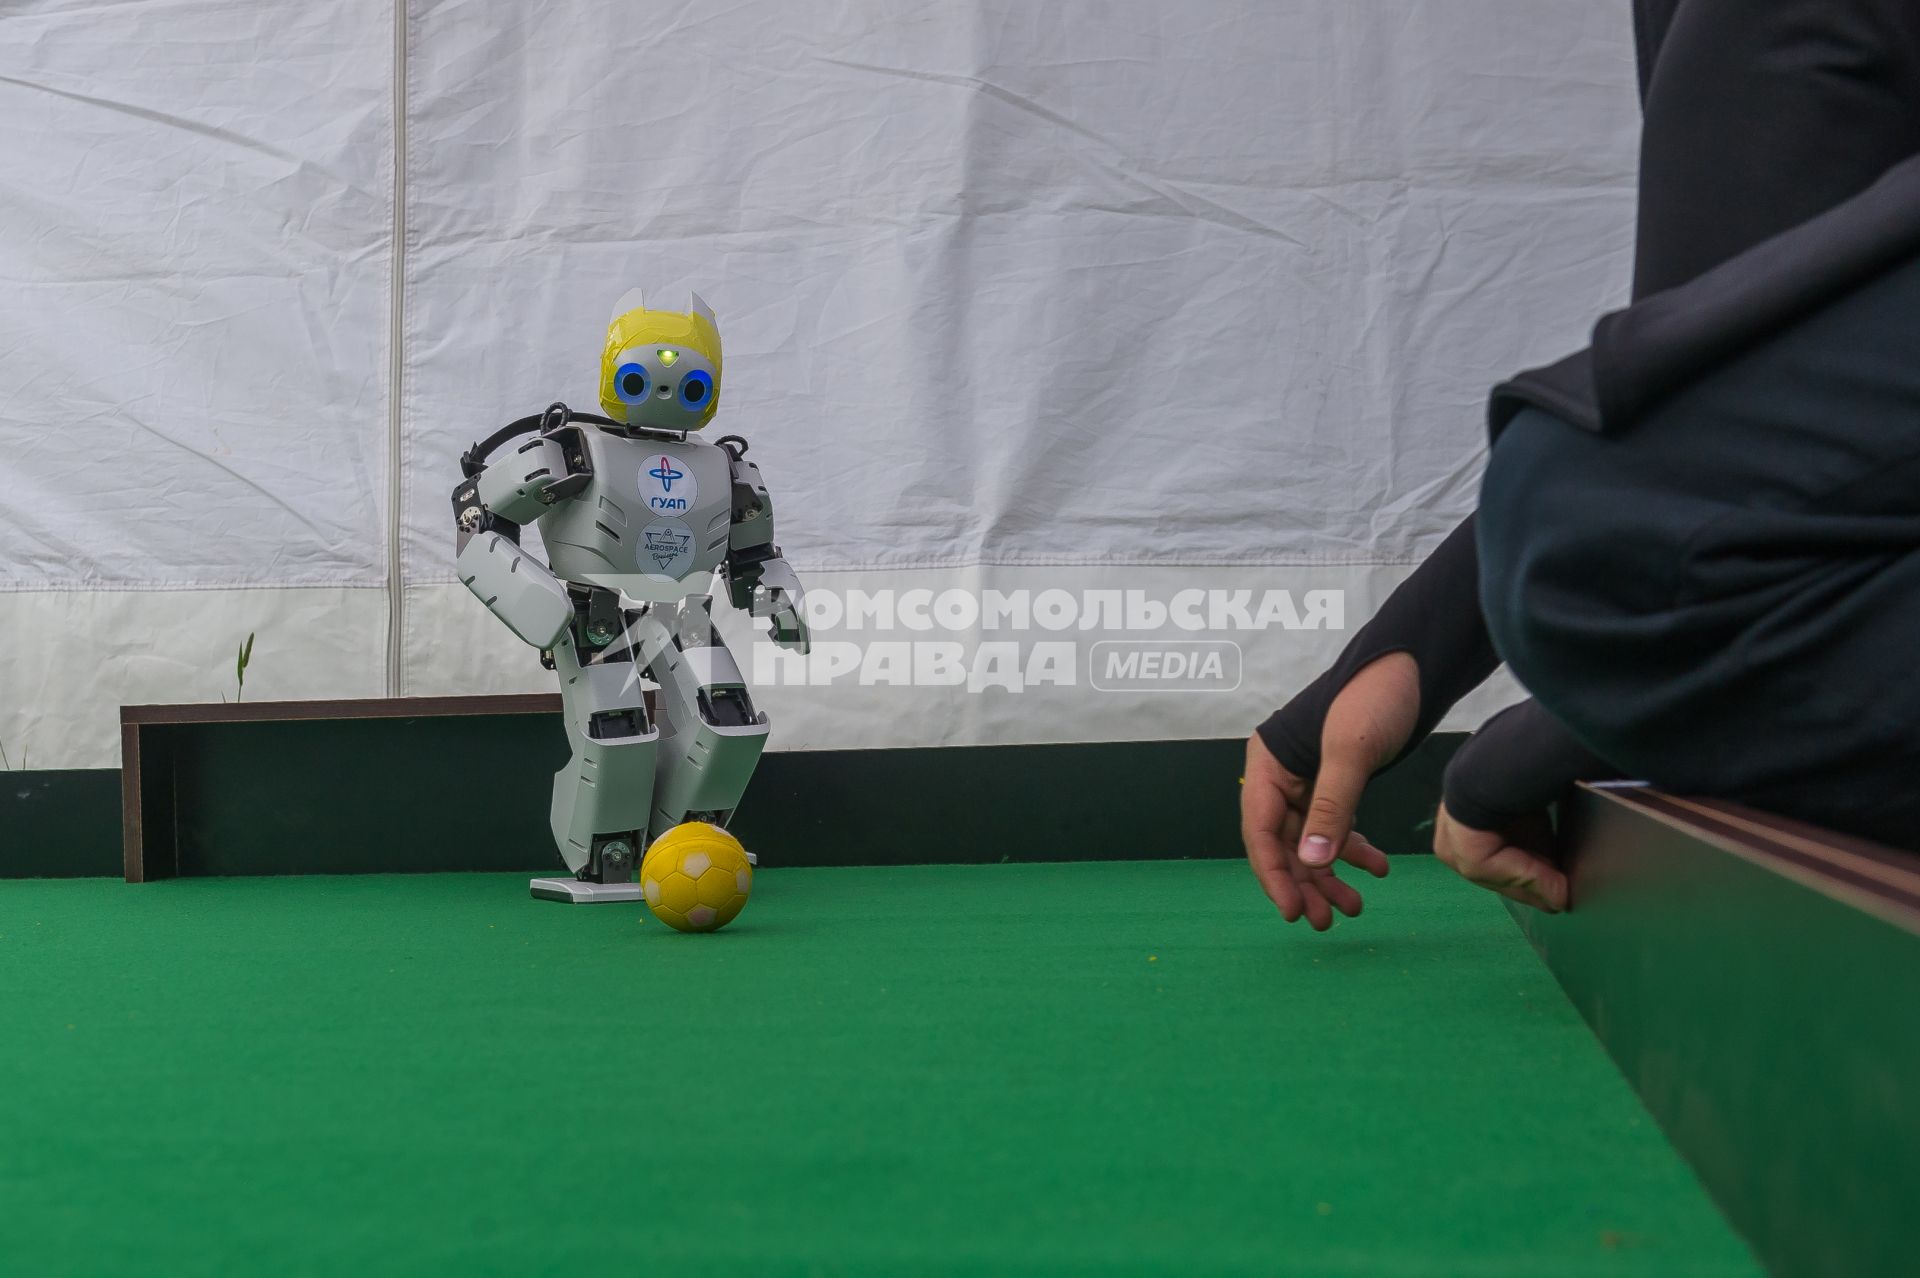 Санкт-Петербург.  Робот играет в футбол на научно-популярном фестивале Geek Picnic в Пулковском парке.